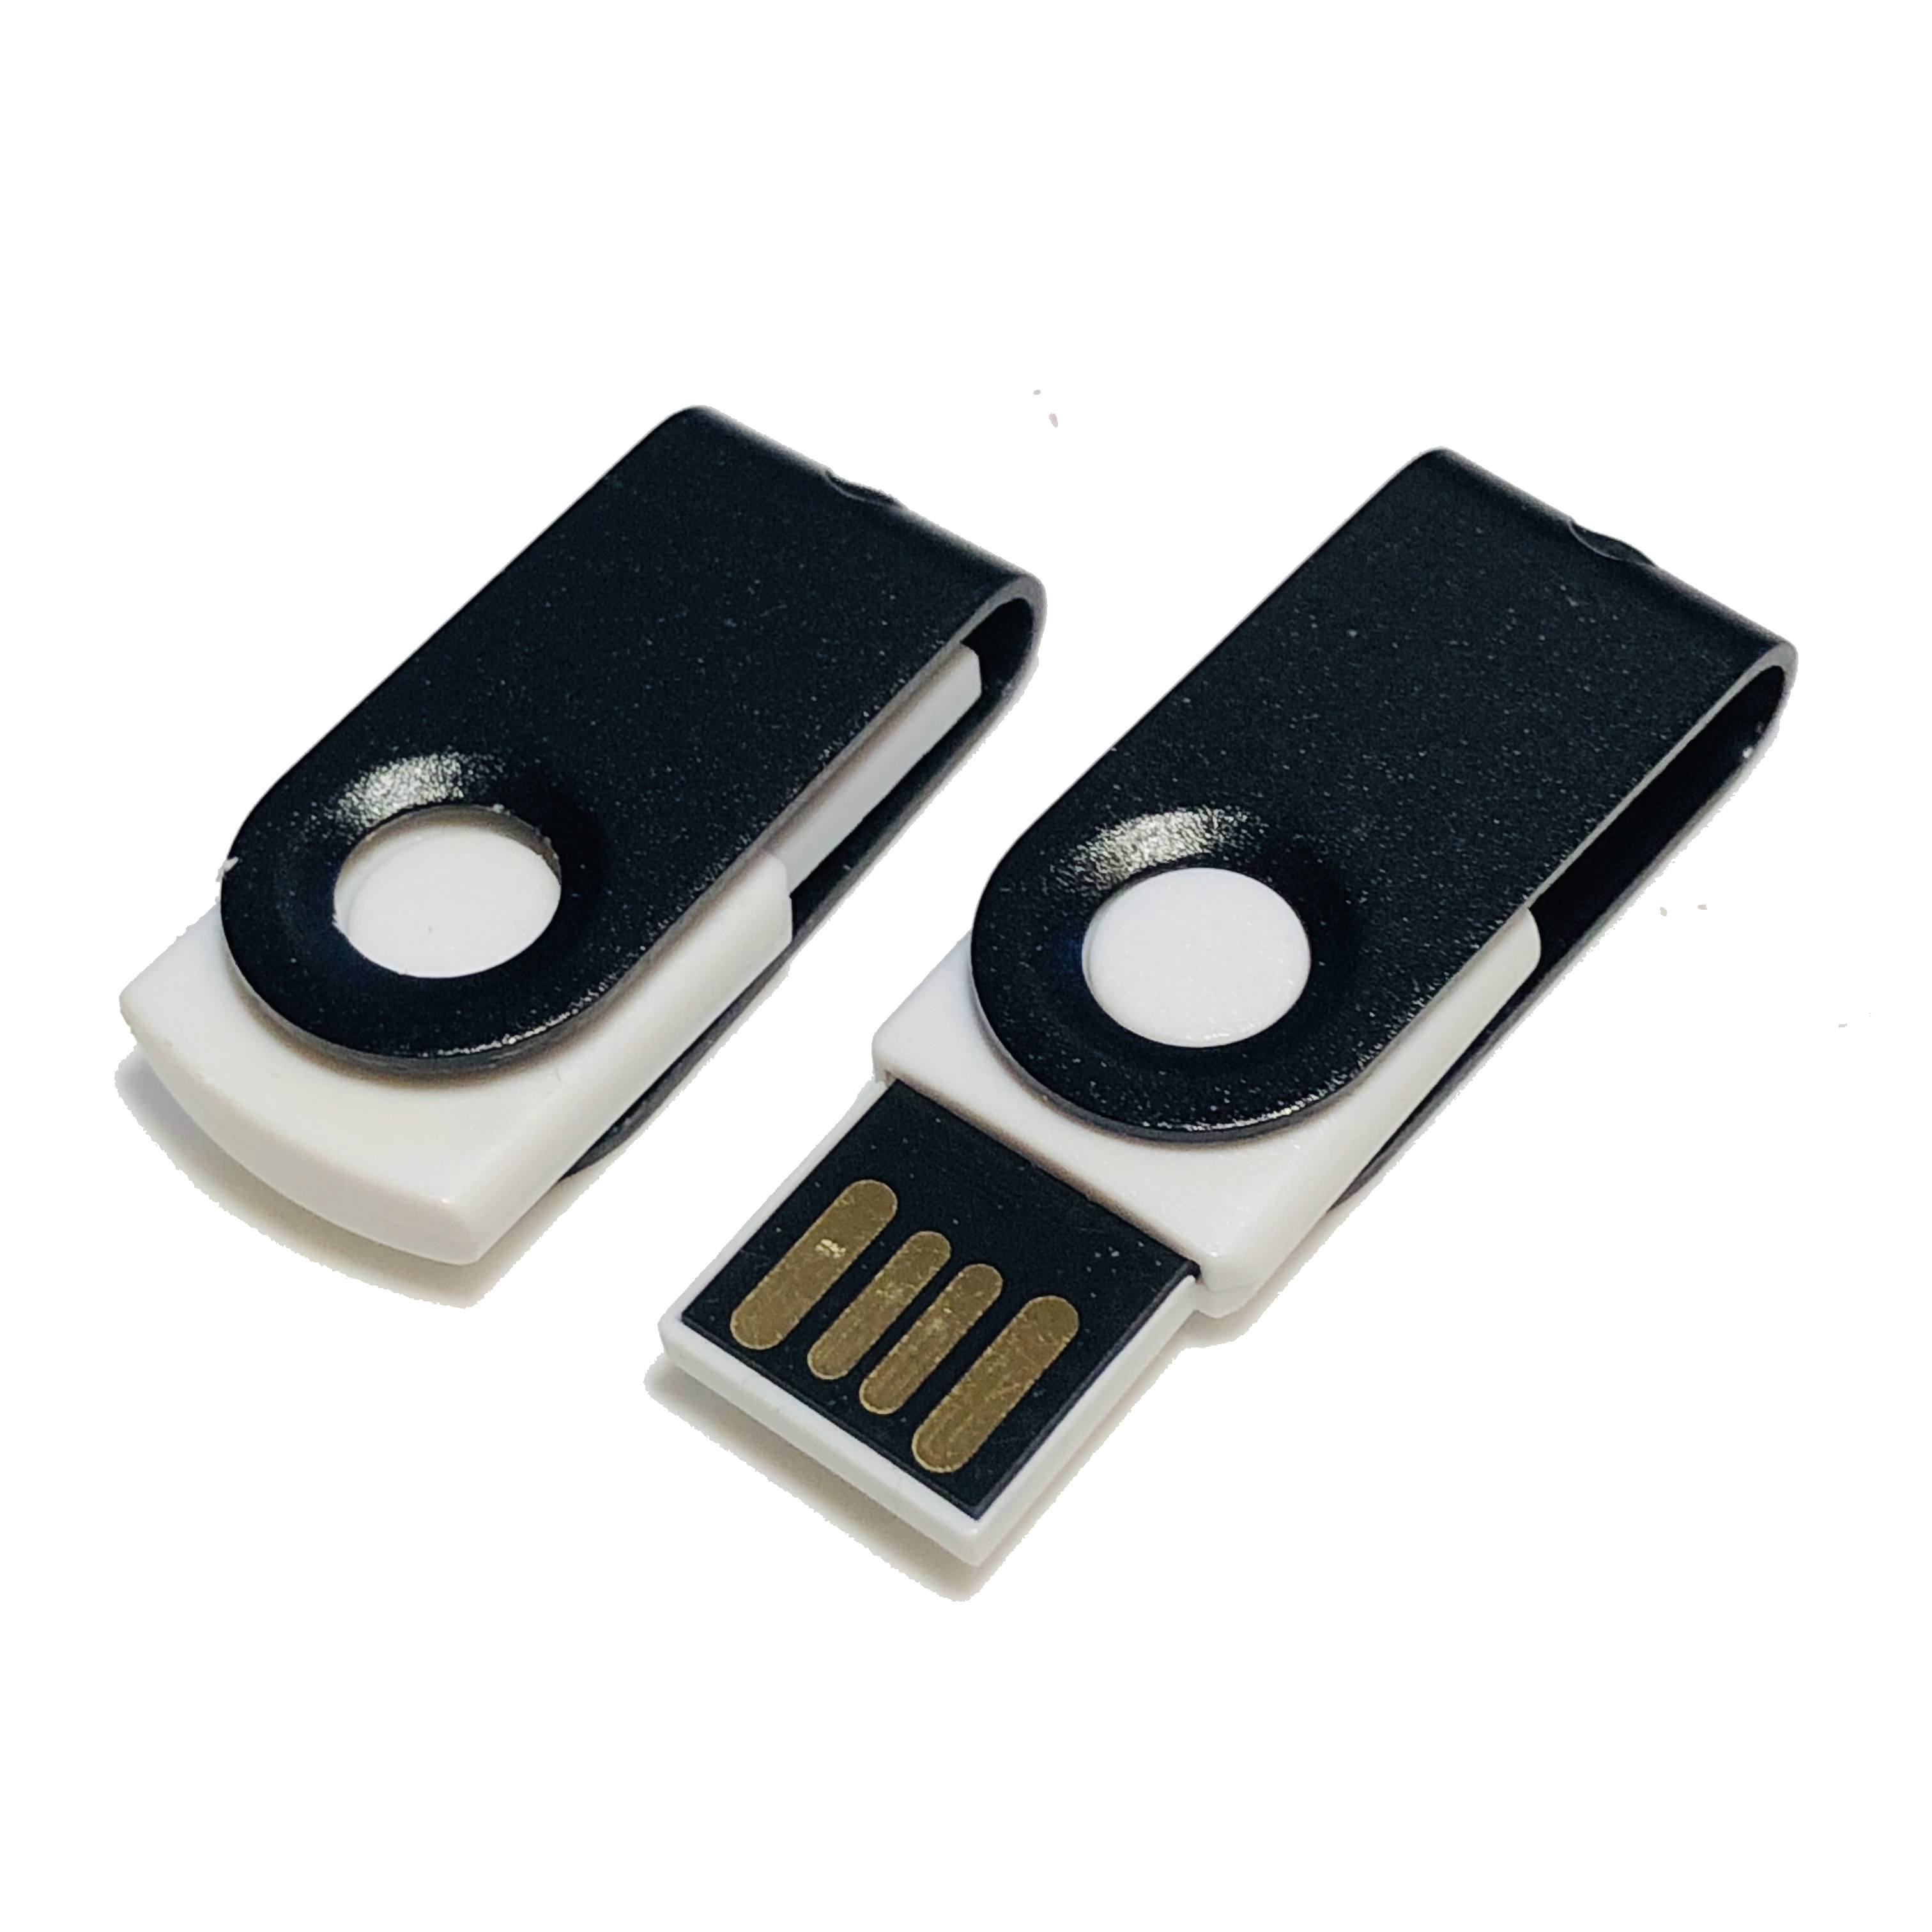 USB GERMANY ® 128 MINI-SWIVEL GB) (Weiß-Schwarz, USB-Stick